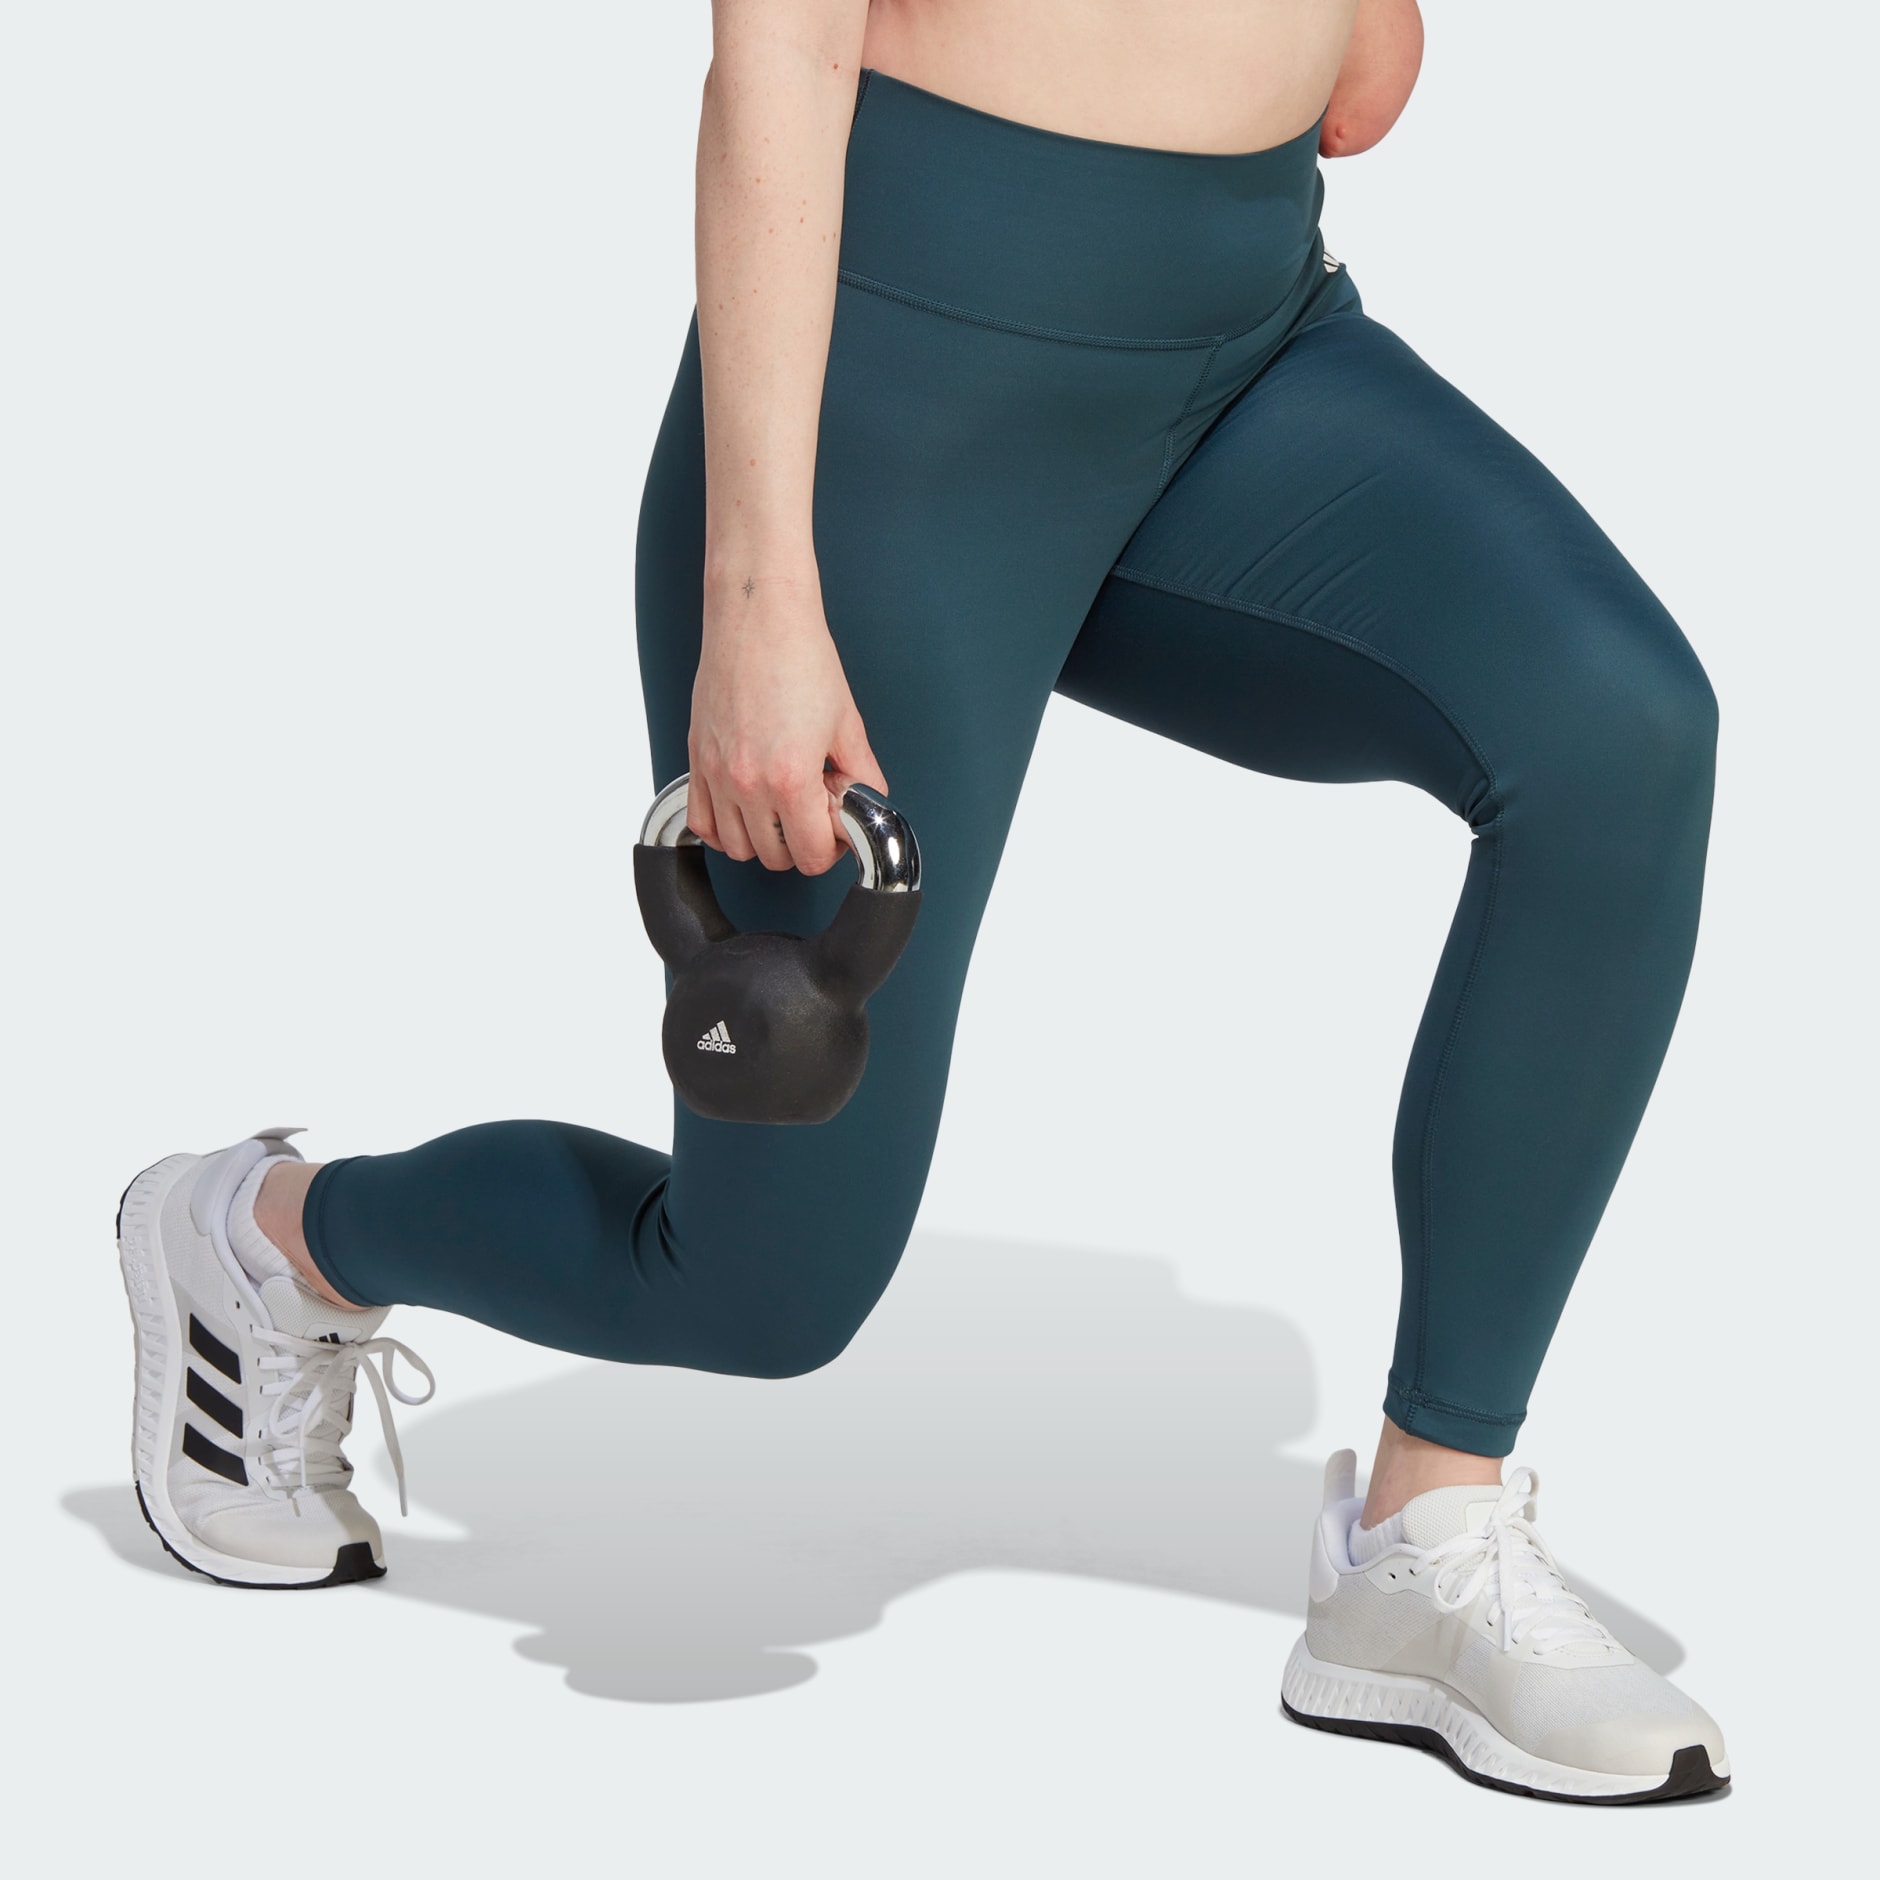 adidas Z.N.E. Leggings - Turquoise, Women's Lifestyle